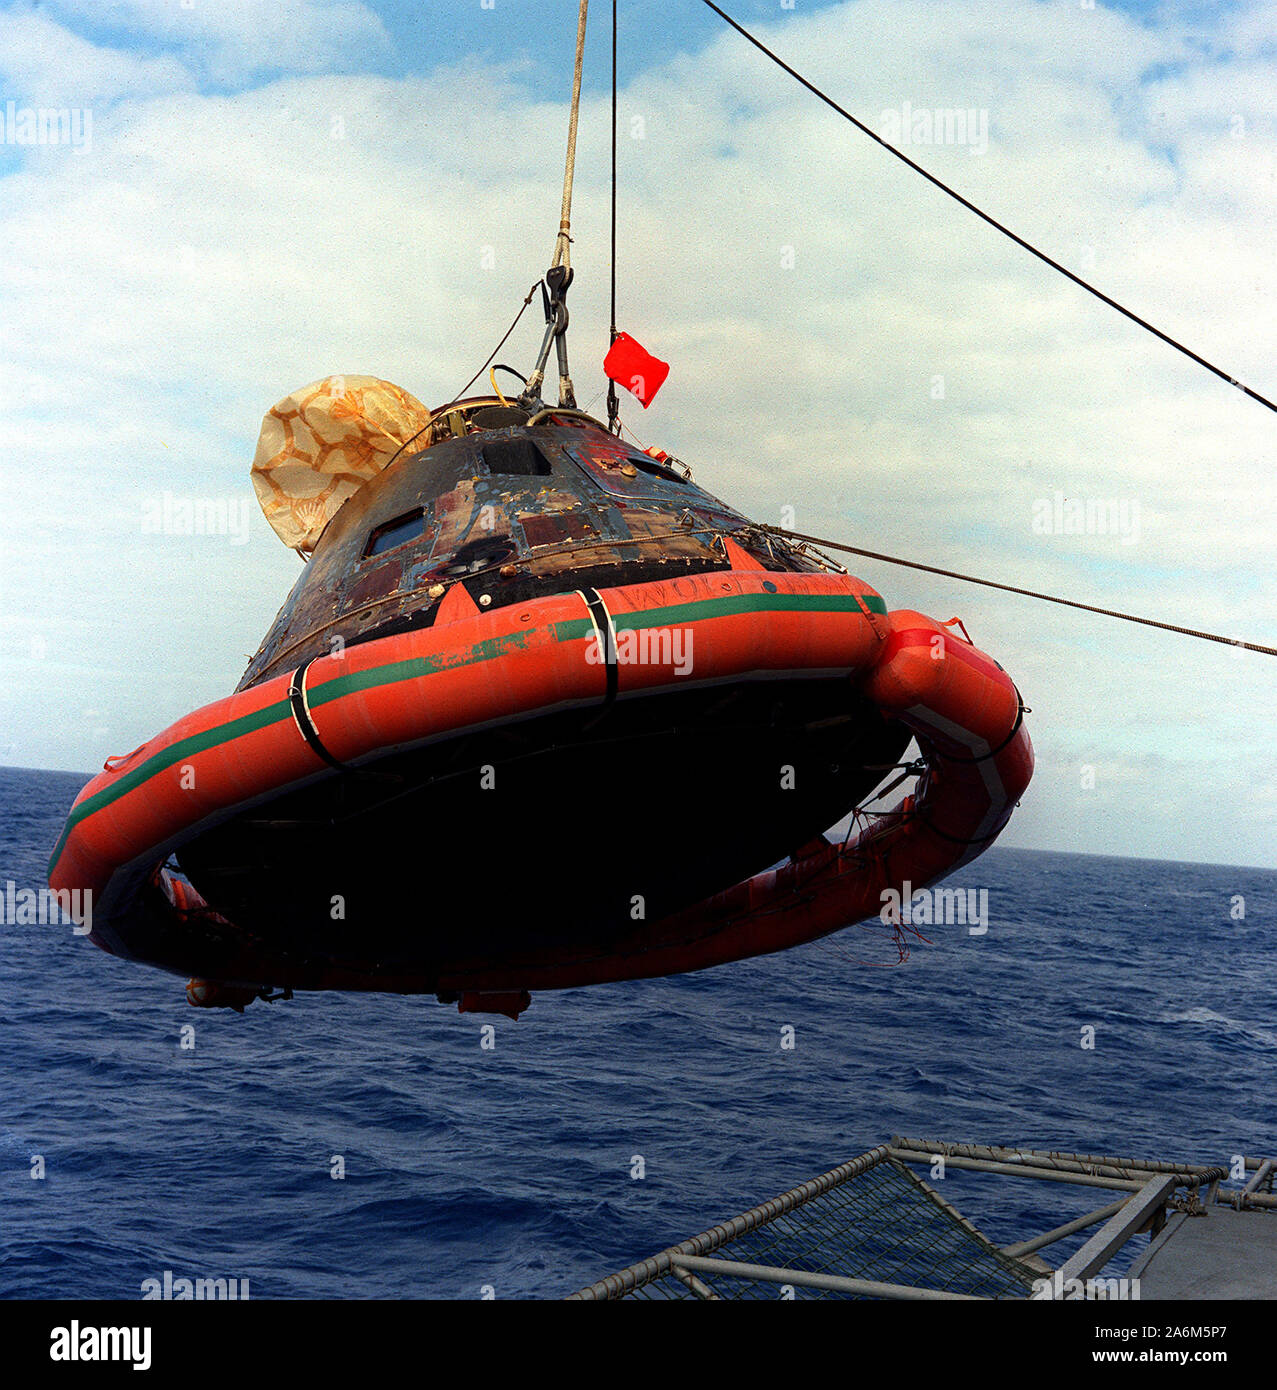 El módulo de comando del Apolo 11 se iza a bordo del USS Hornet, el primer buque de rescate para el histórico aterrizaje lunar de la misión Apolo 11. El splashdown tuvo lugar a las 12:49 p.m. ET, 24 de julio de 1969, alrededor de 812 millas náuticas al sudoeste de Hawai, a sólo 12 millas náuticas desde el portaaviones USS Hornet. Foto de stock